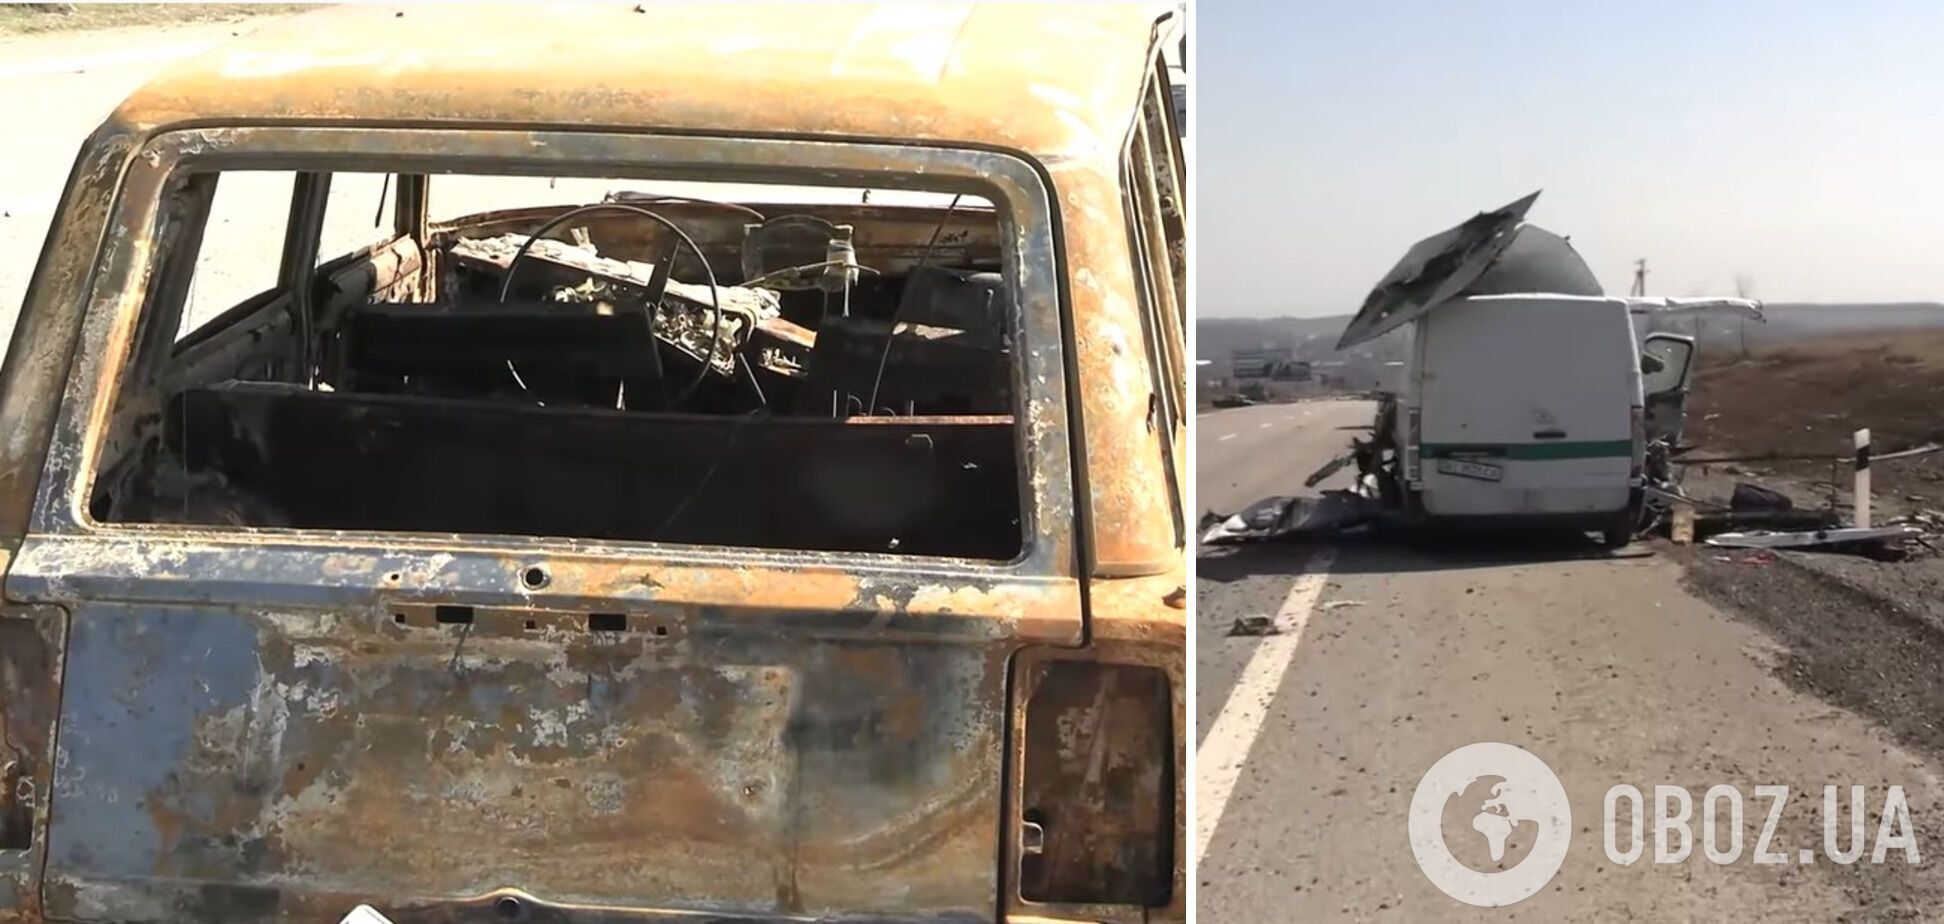 Розстріляні й спалені окупантами автомобілі місцевих жителів